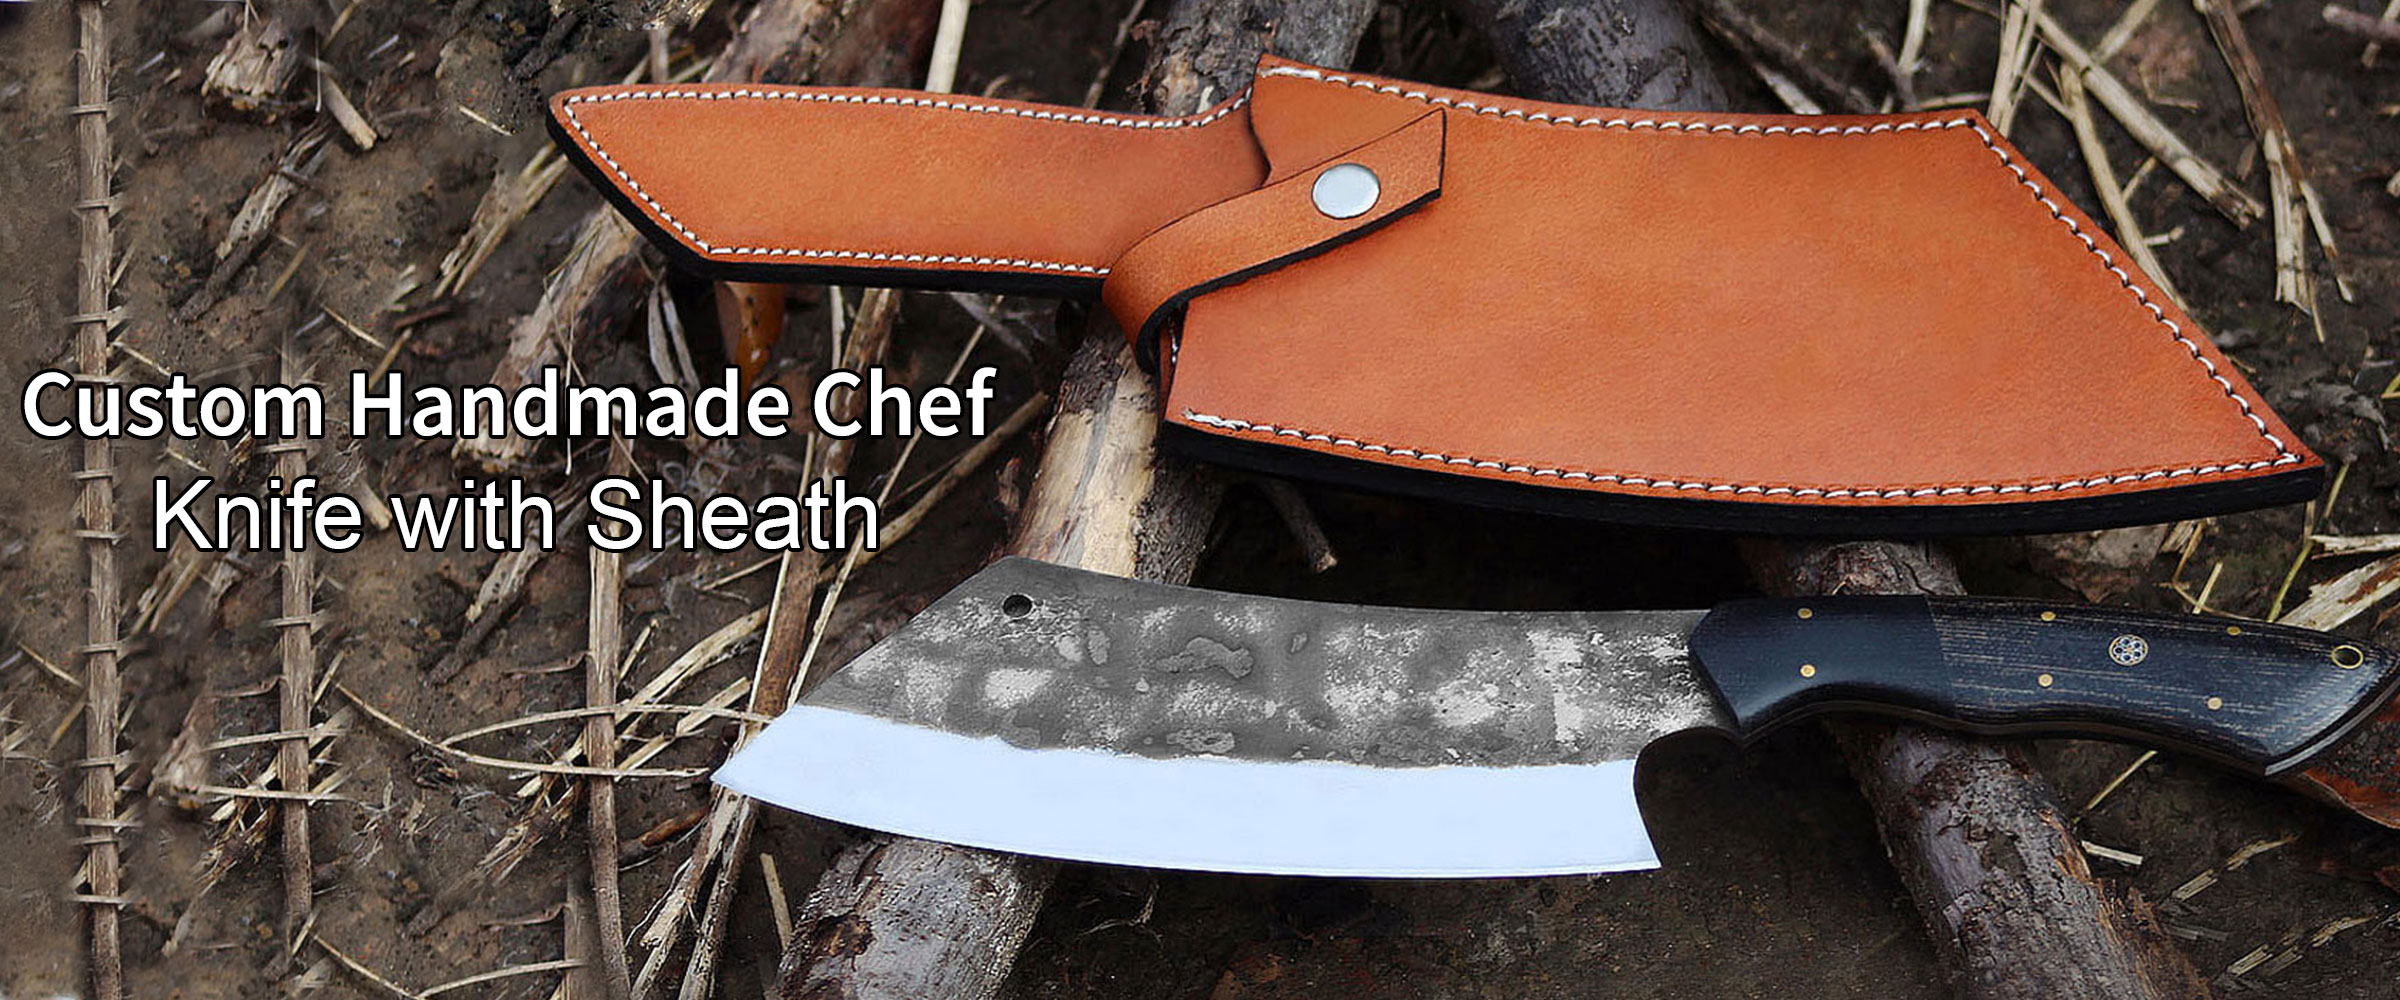 kitchen chef knife